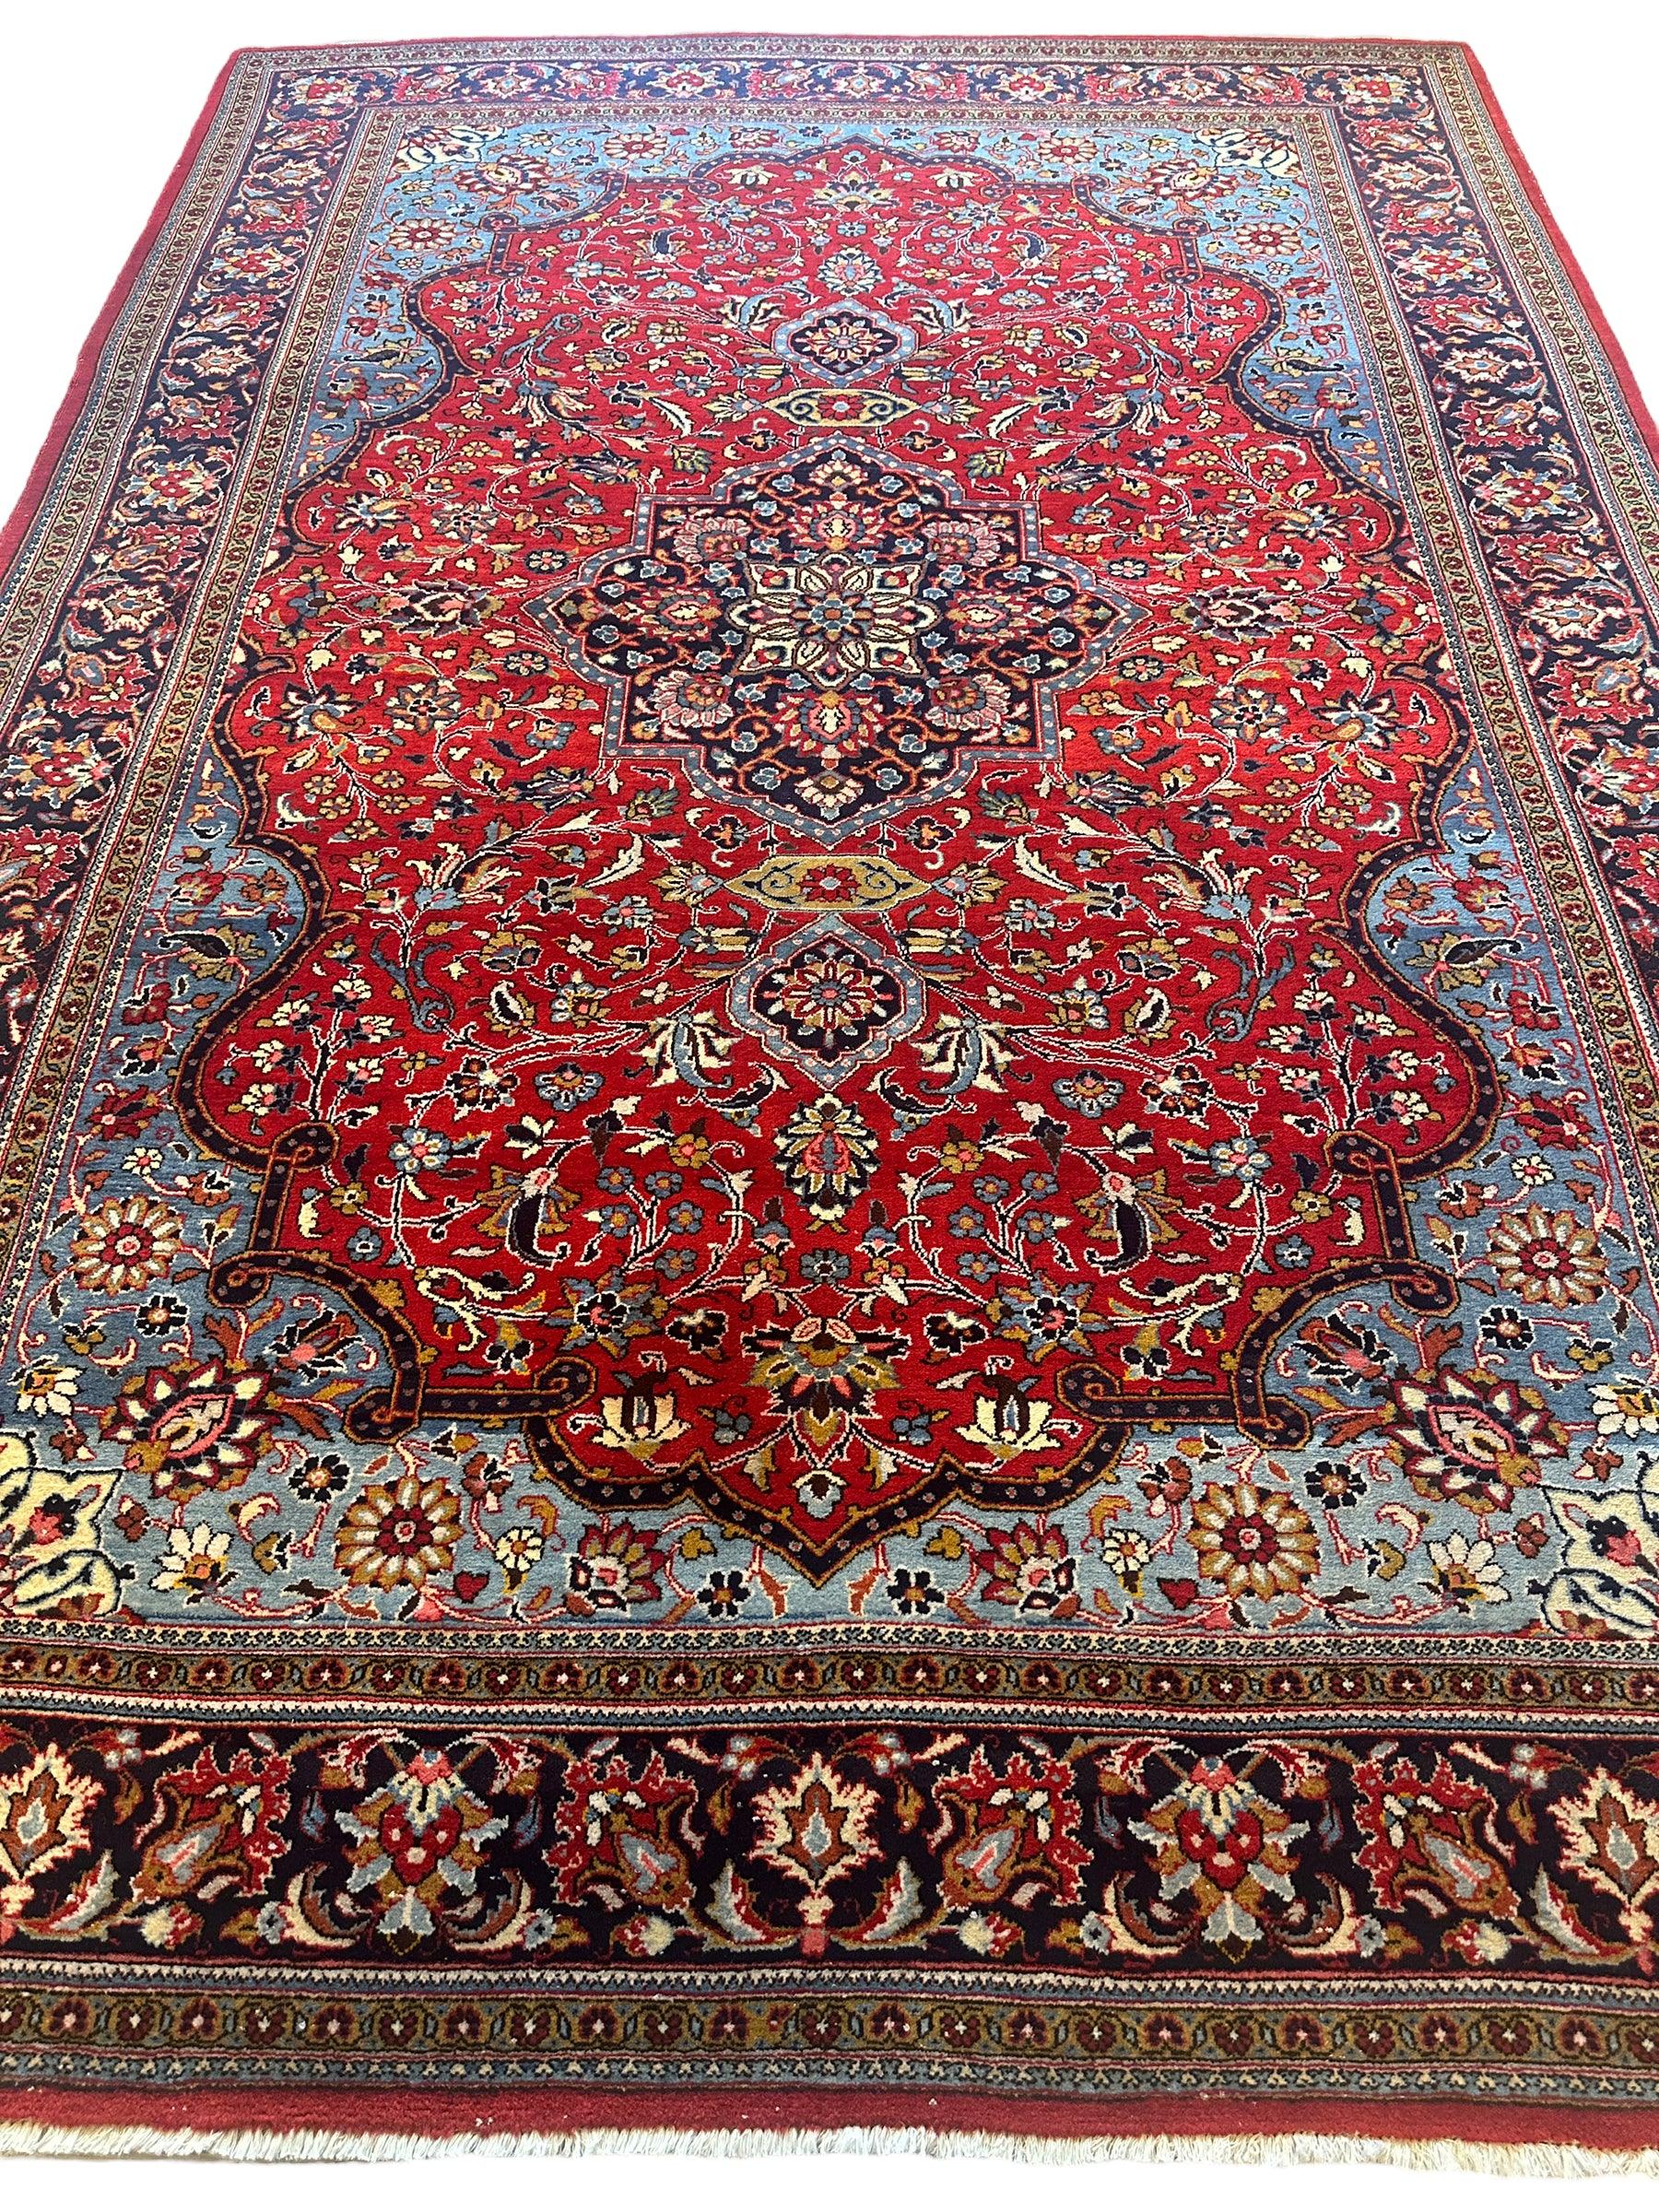 Incredible Persian Kashan Rug 7’2” x 10’2”